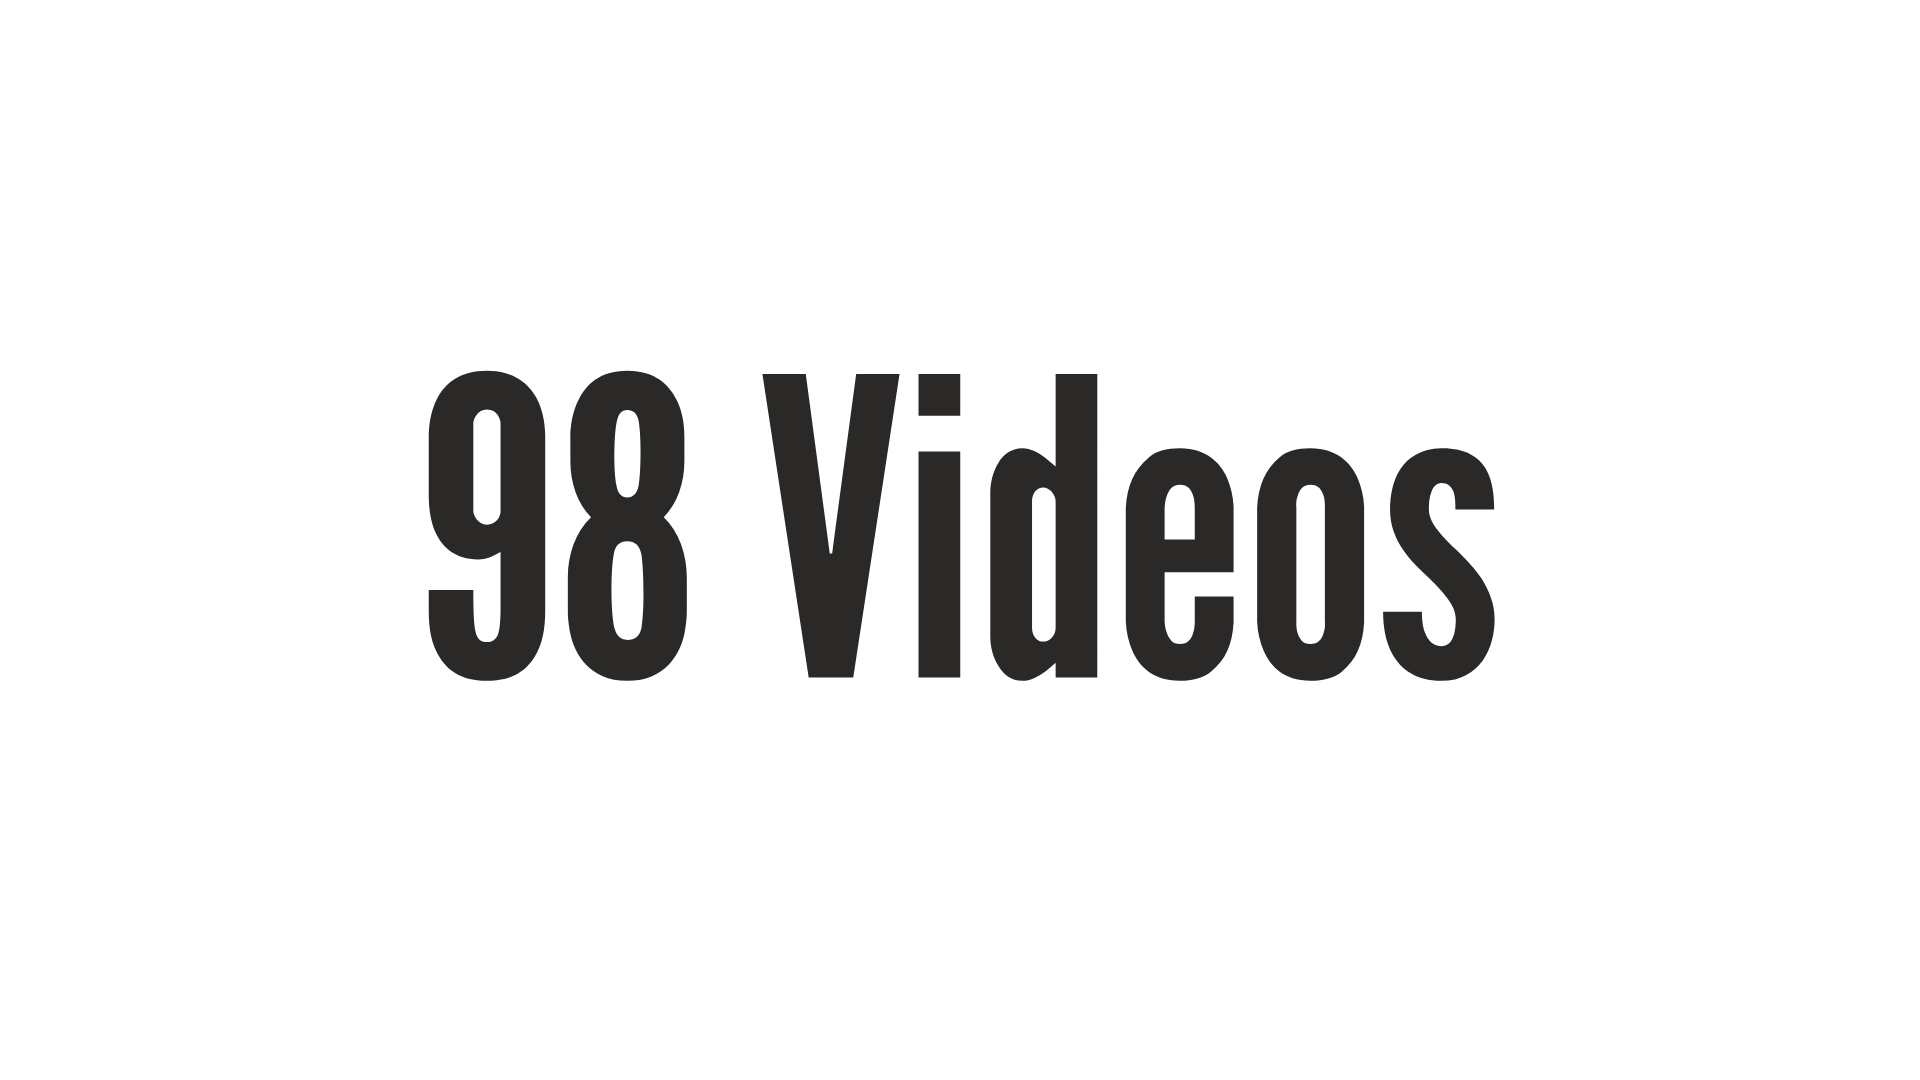 98 videos
